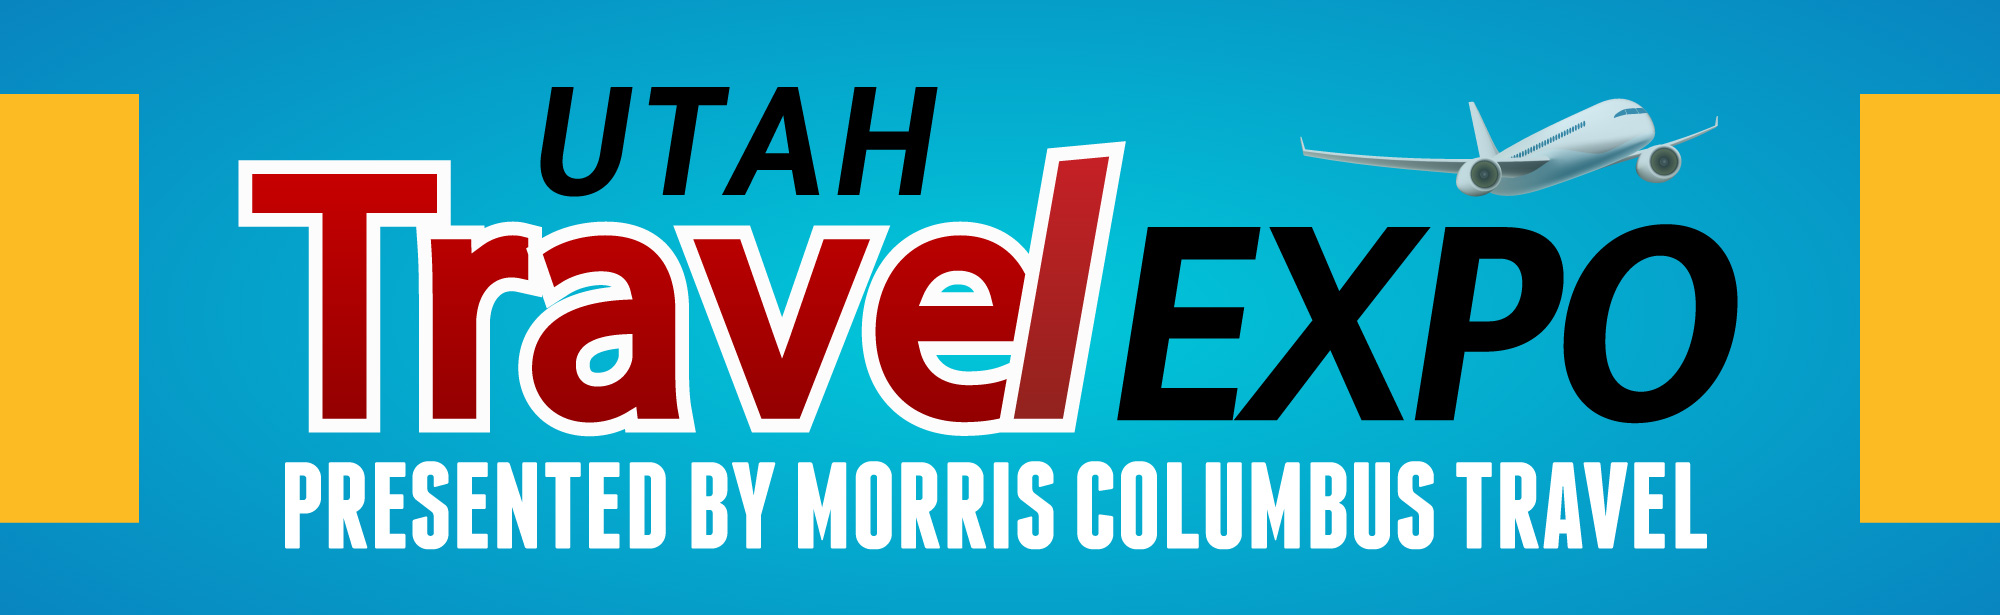 Morris Columbus Utah Travel Expo - Exhibitor Registration